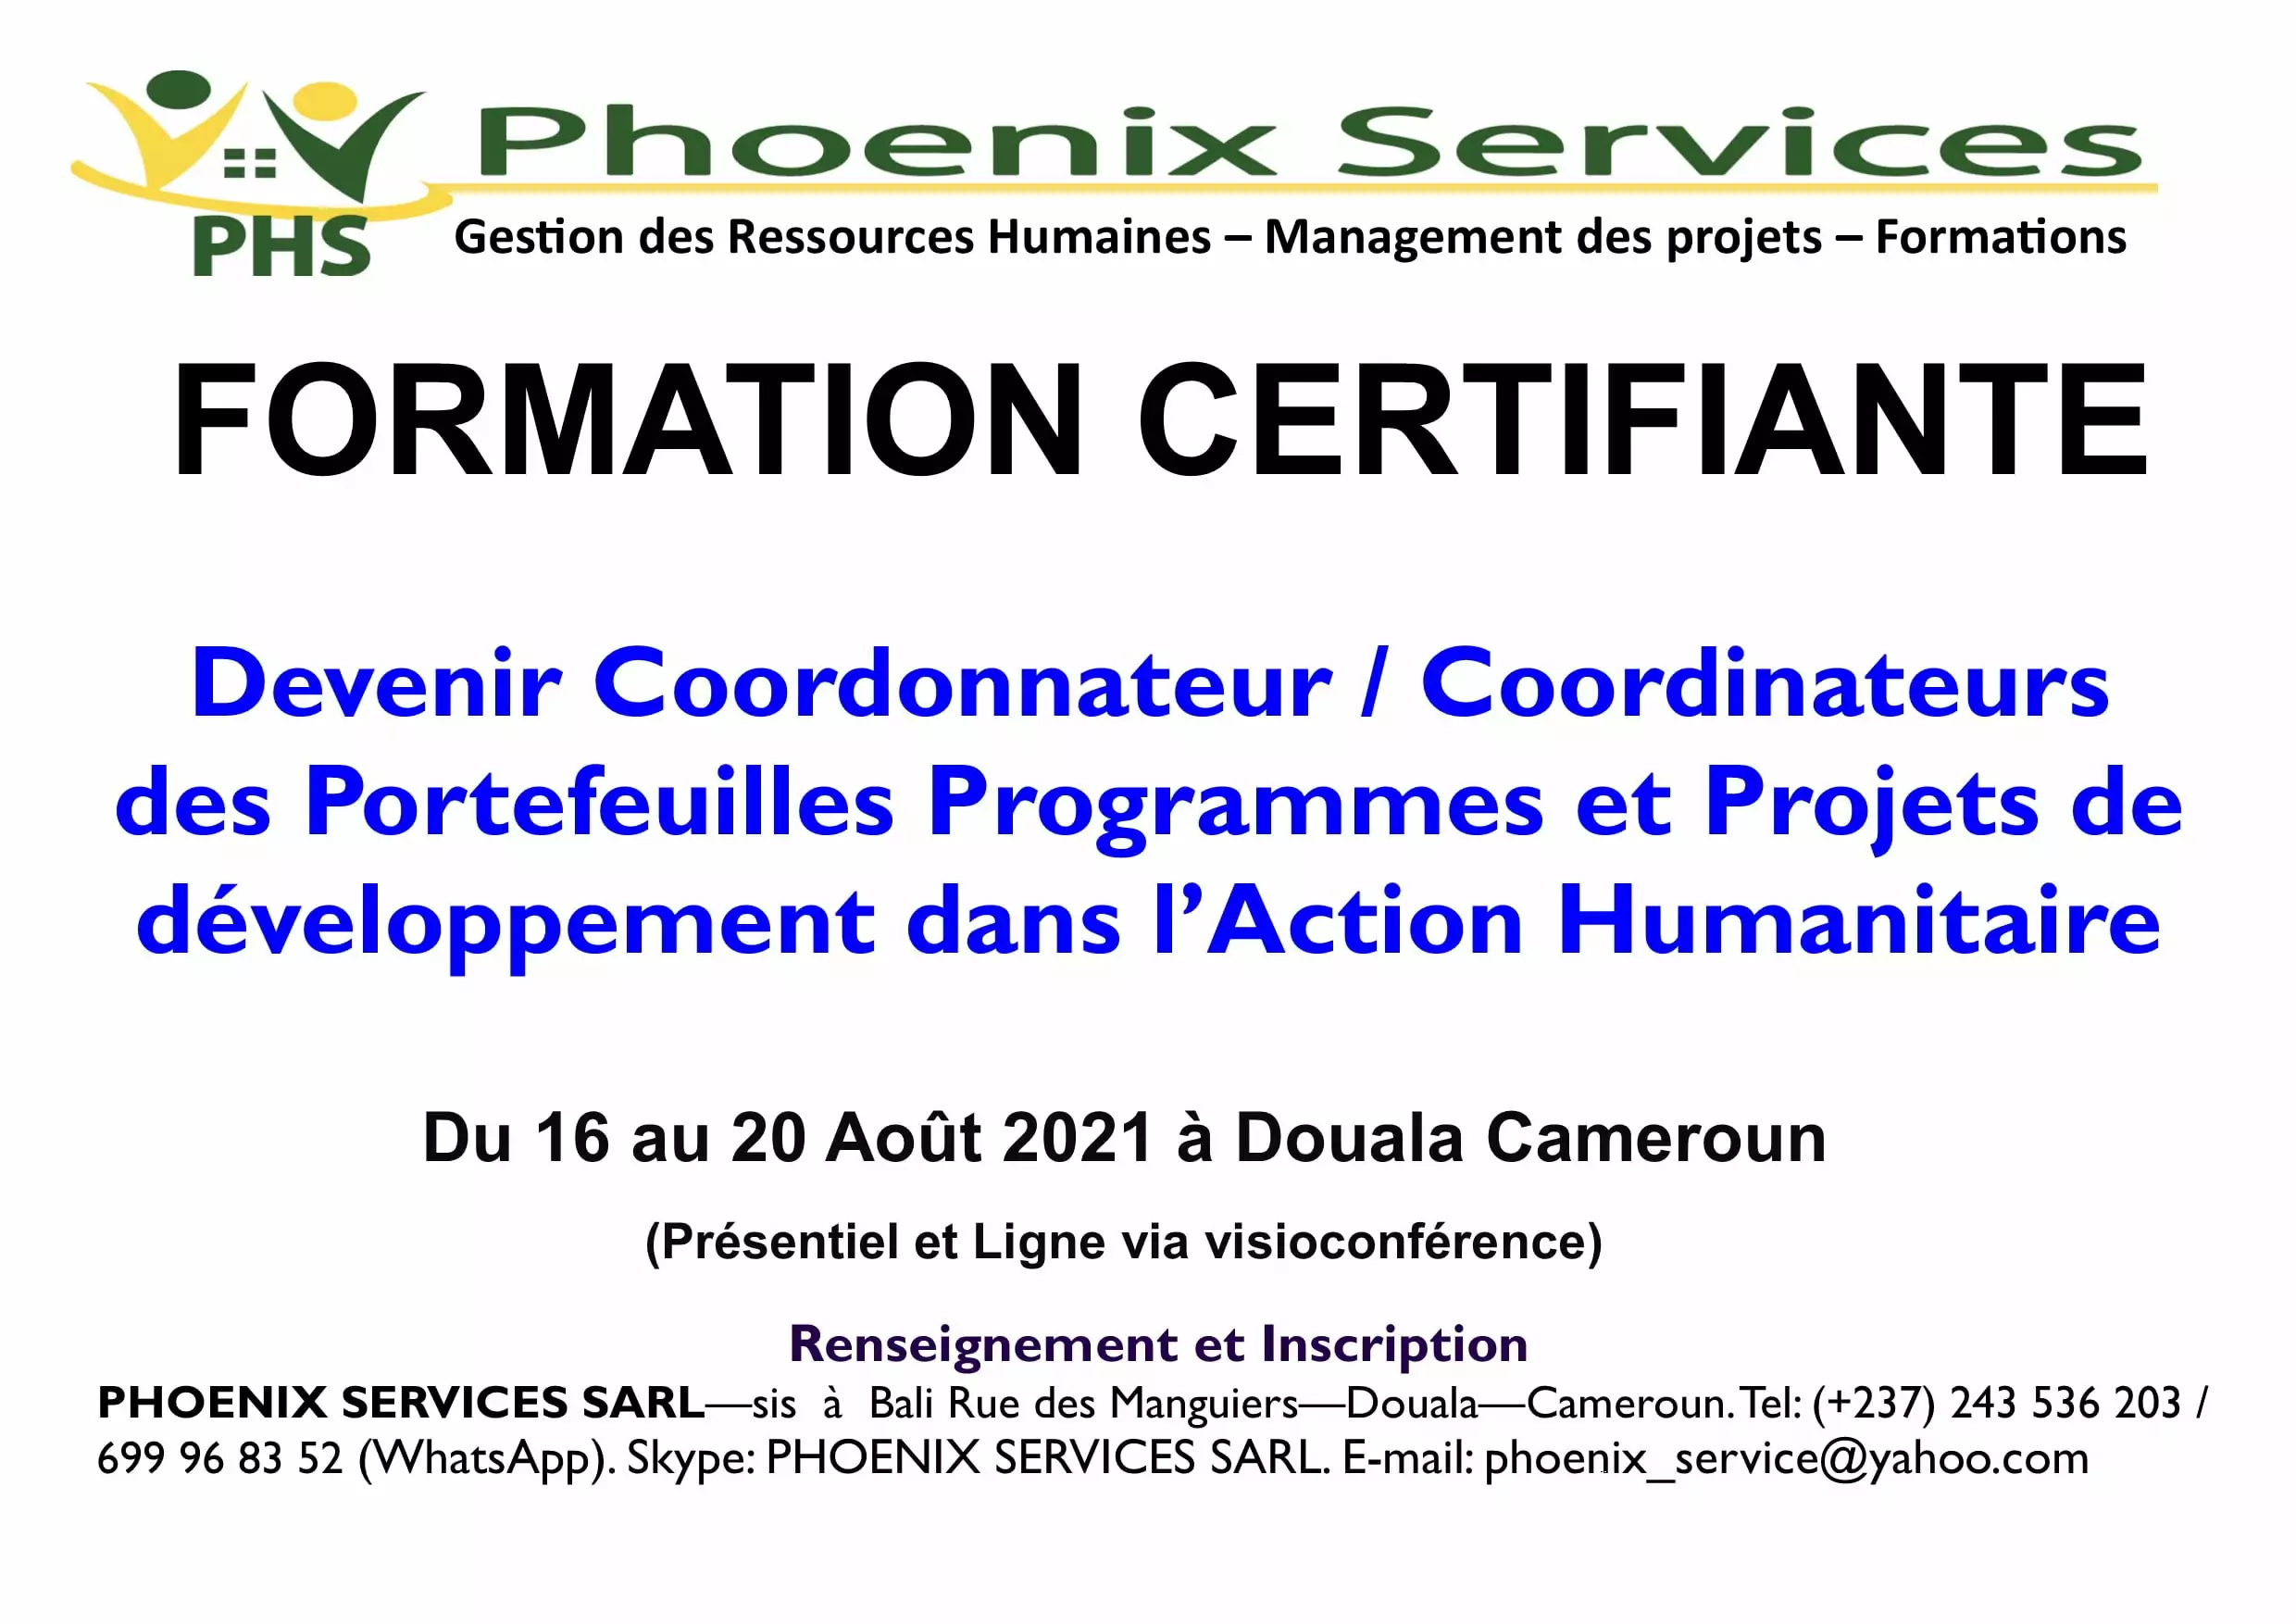 Formation Certifiante : Devenir Coordonnateur / Coordinateur des Portefeuilles, Programmes et Projets